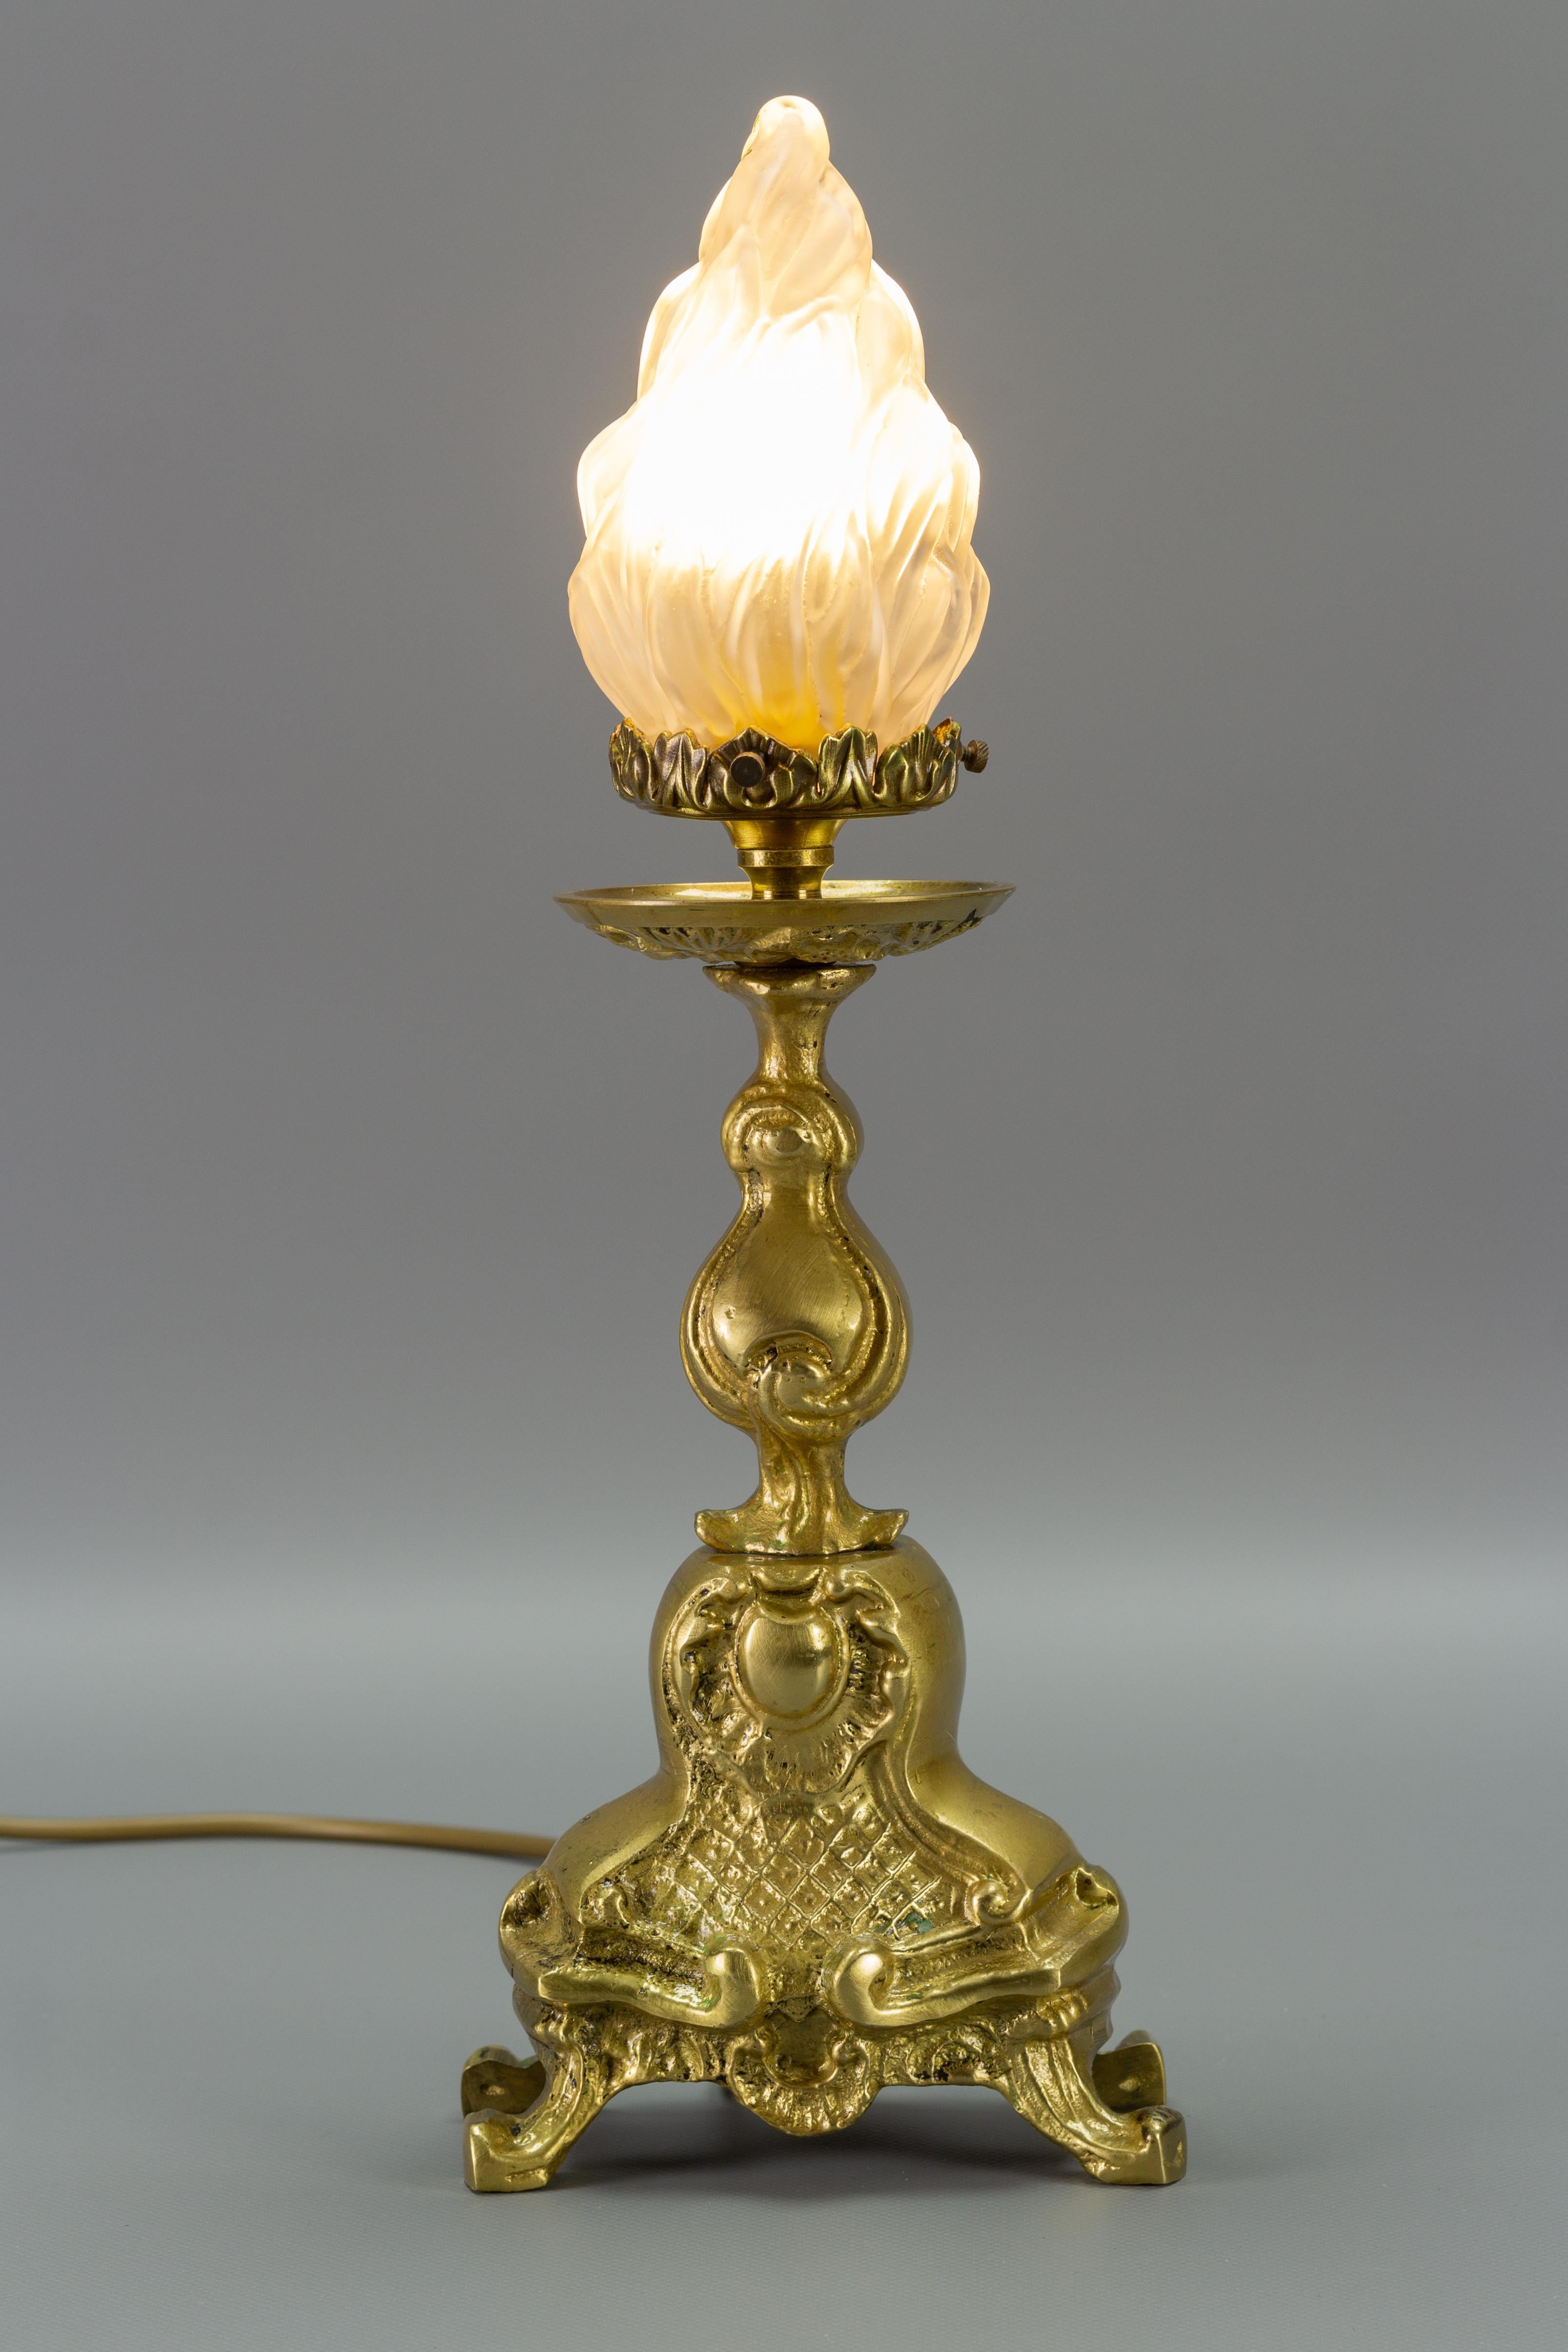 Französische Tischlampe aus Bronze im Rokoko-Stil mit flammenförmigem Lampenschirm aus Milchglas. 
Eine Fassung für eine Glühbirne der Größe E14.
In die USA werden sie mit einem Adapter für das US-Verkabelungssystem ausgeliefert.
Abmessungen: Höhe